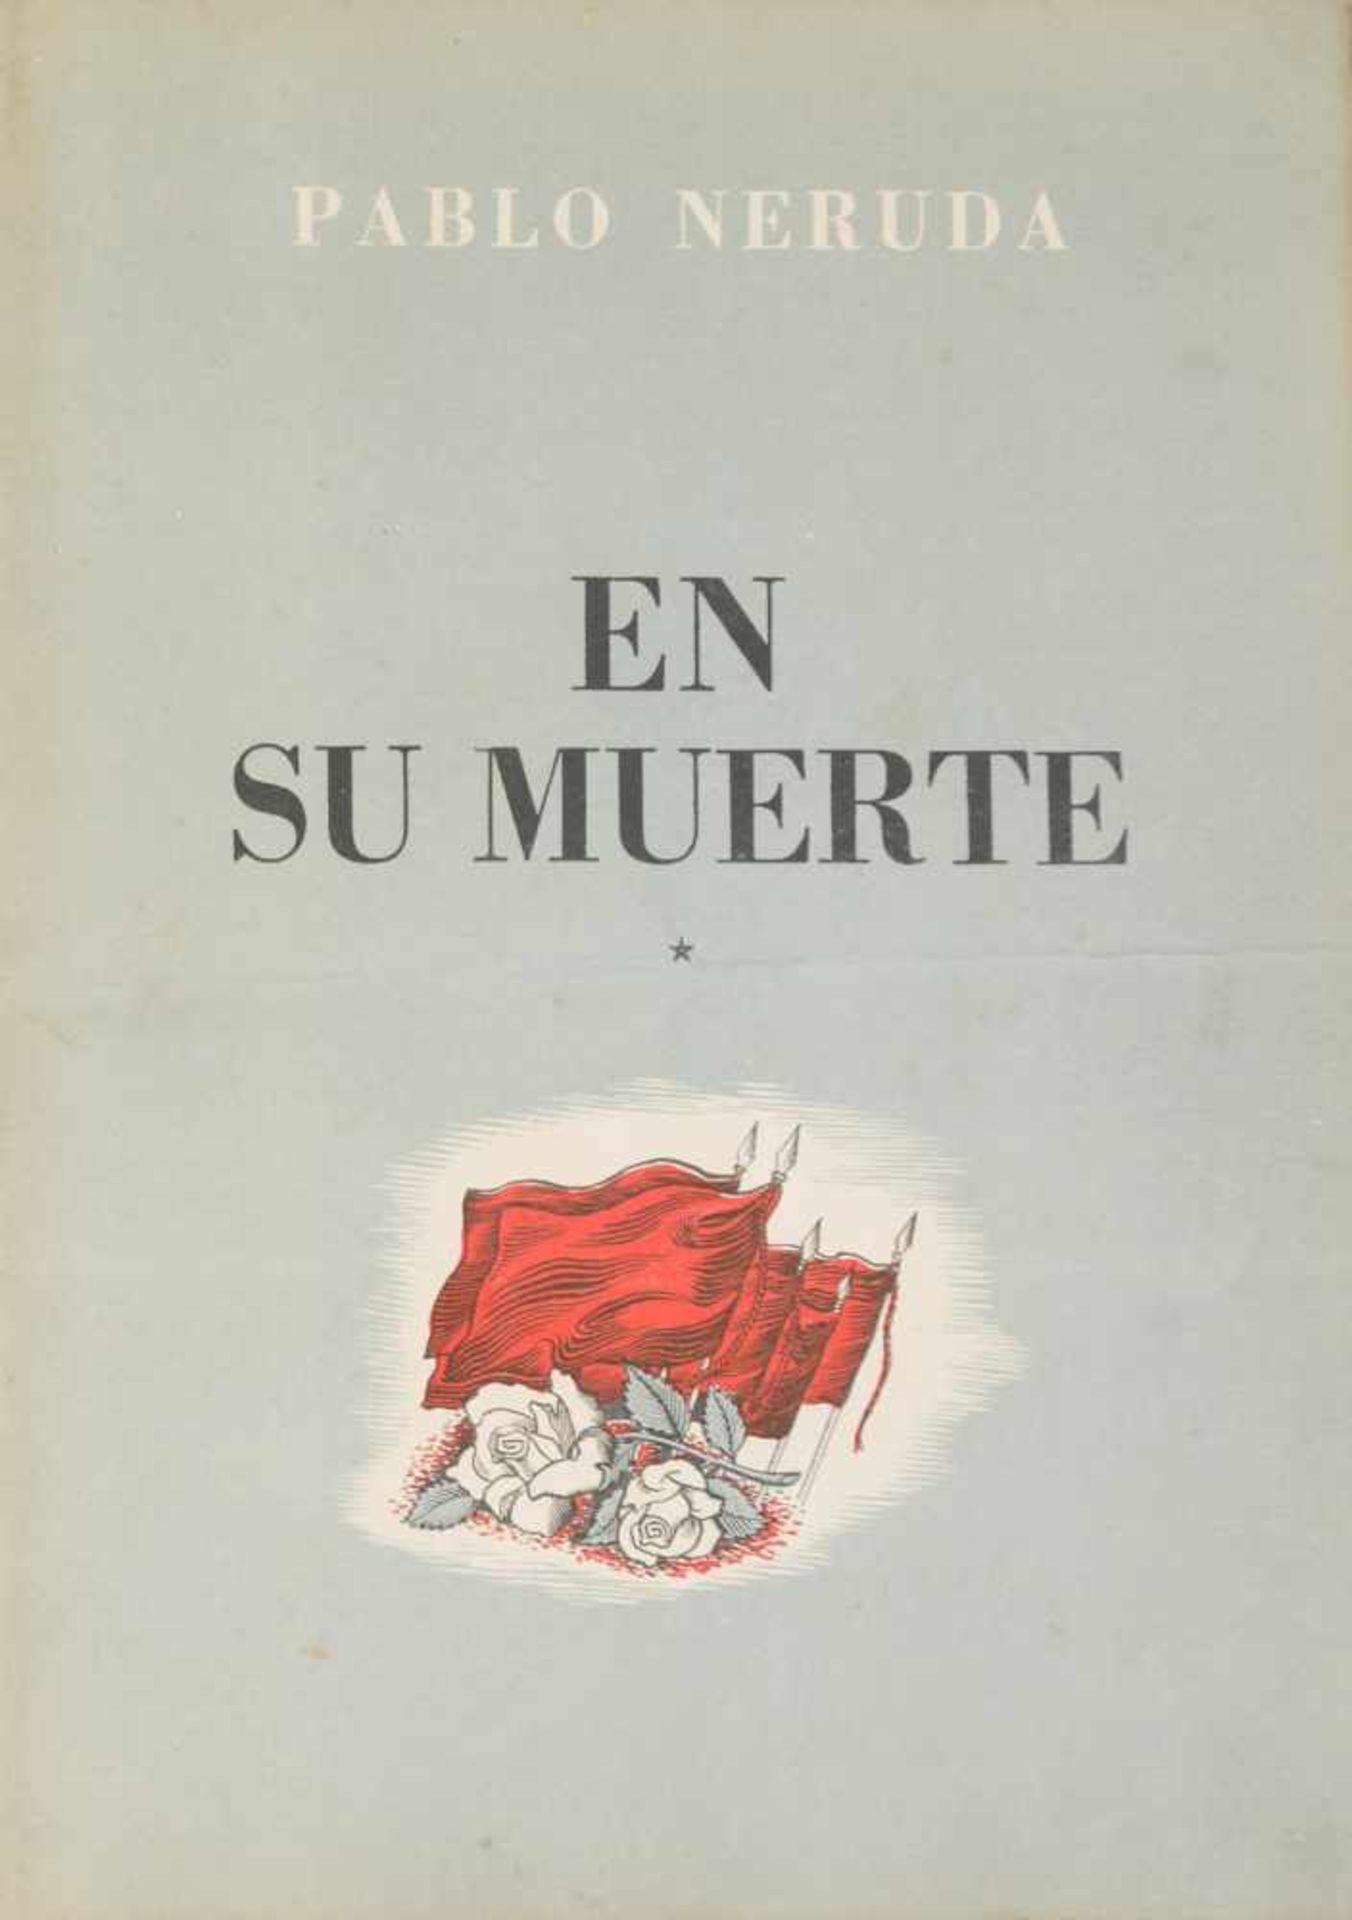 Neruda, Pablo. Original poem, n° 1 de "En su muerte (On his death)" (1953), dedicated to Stalin,